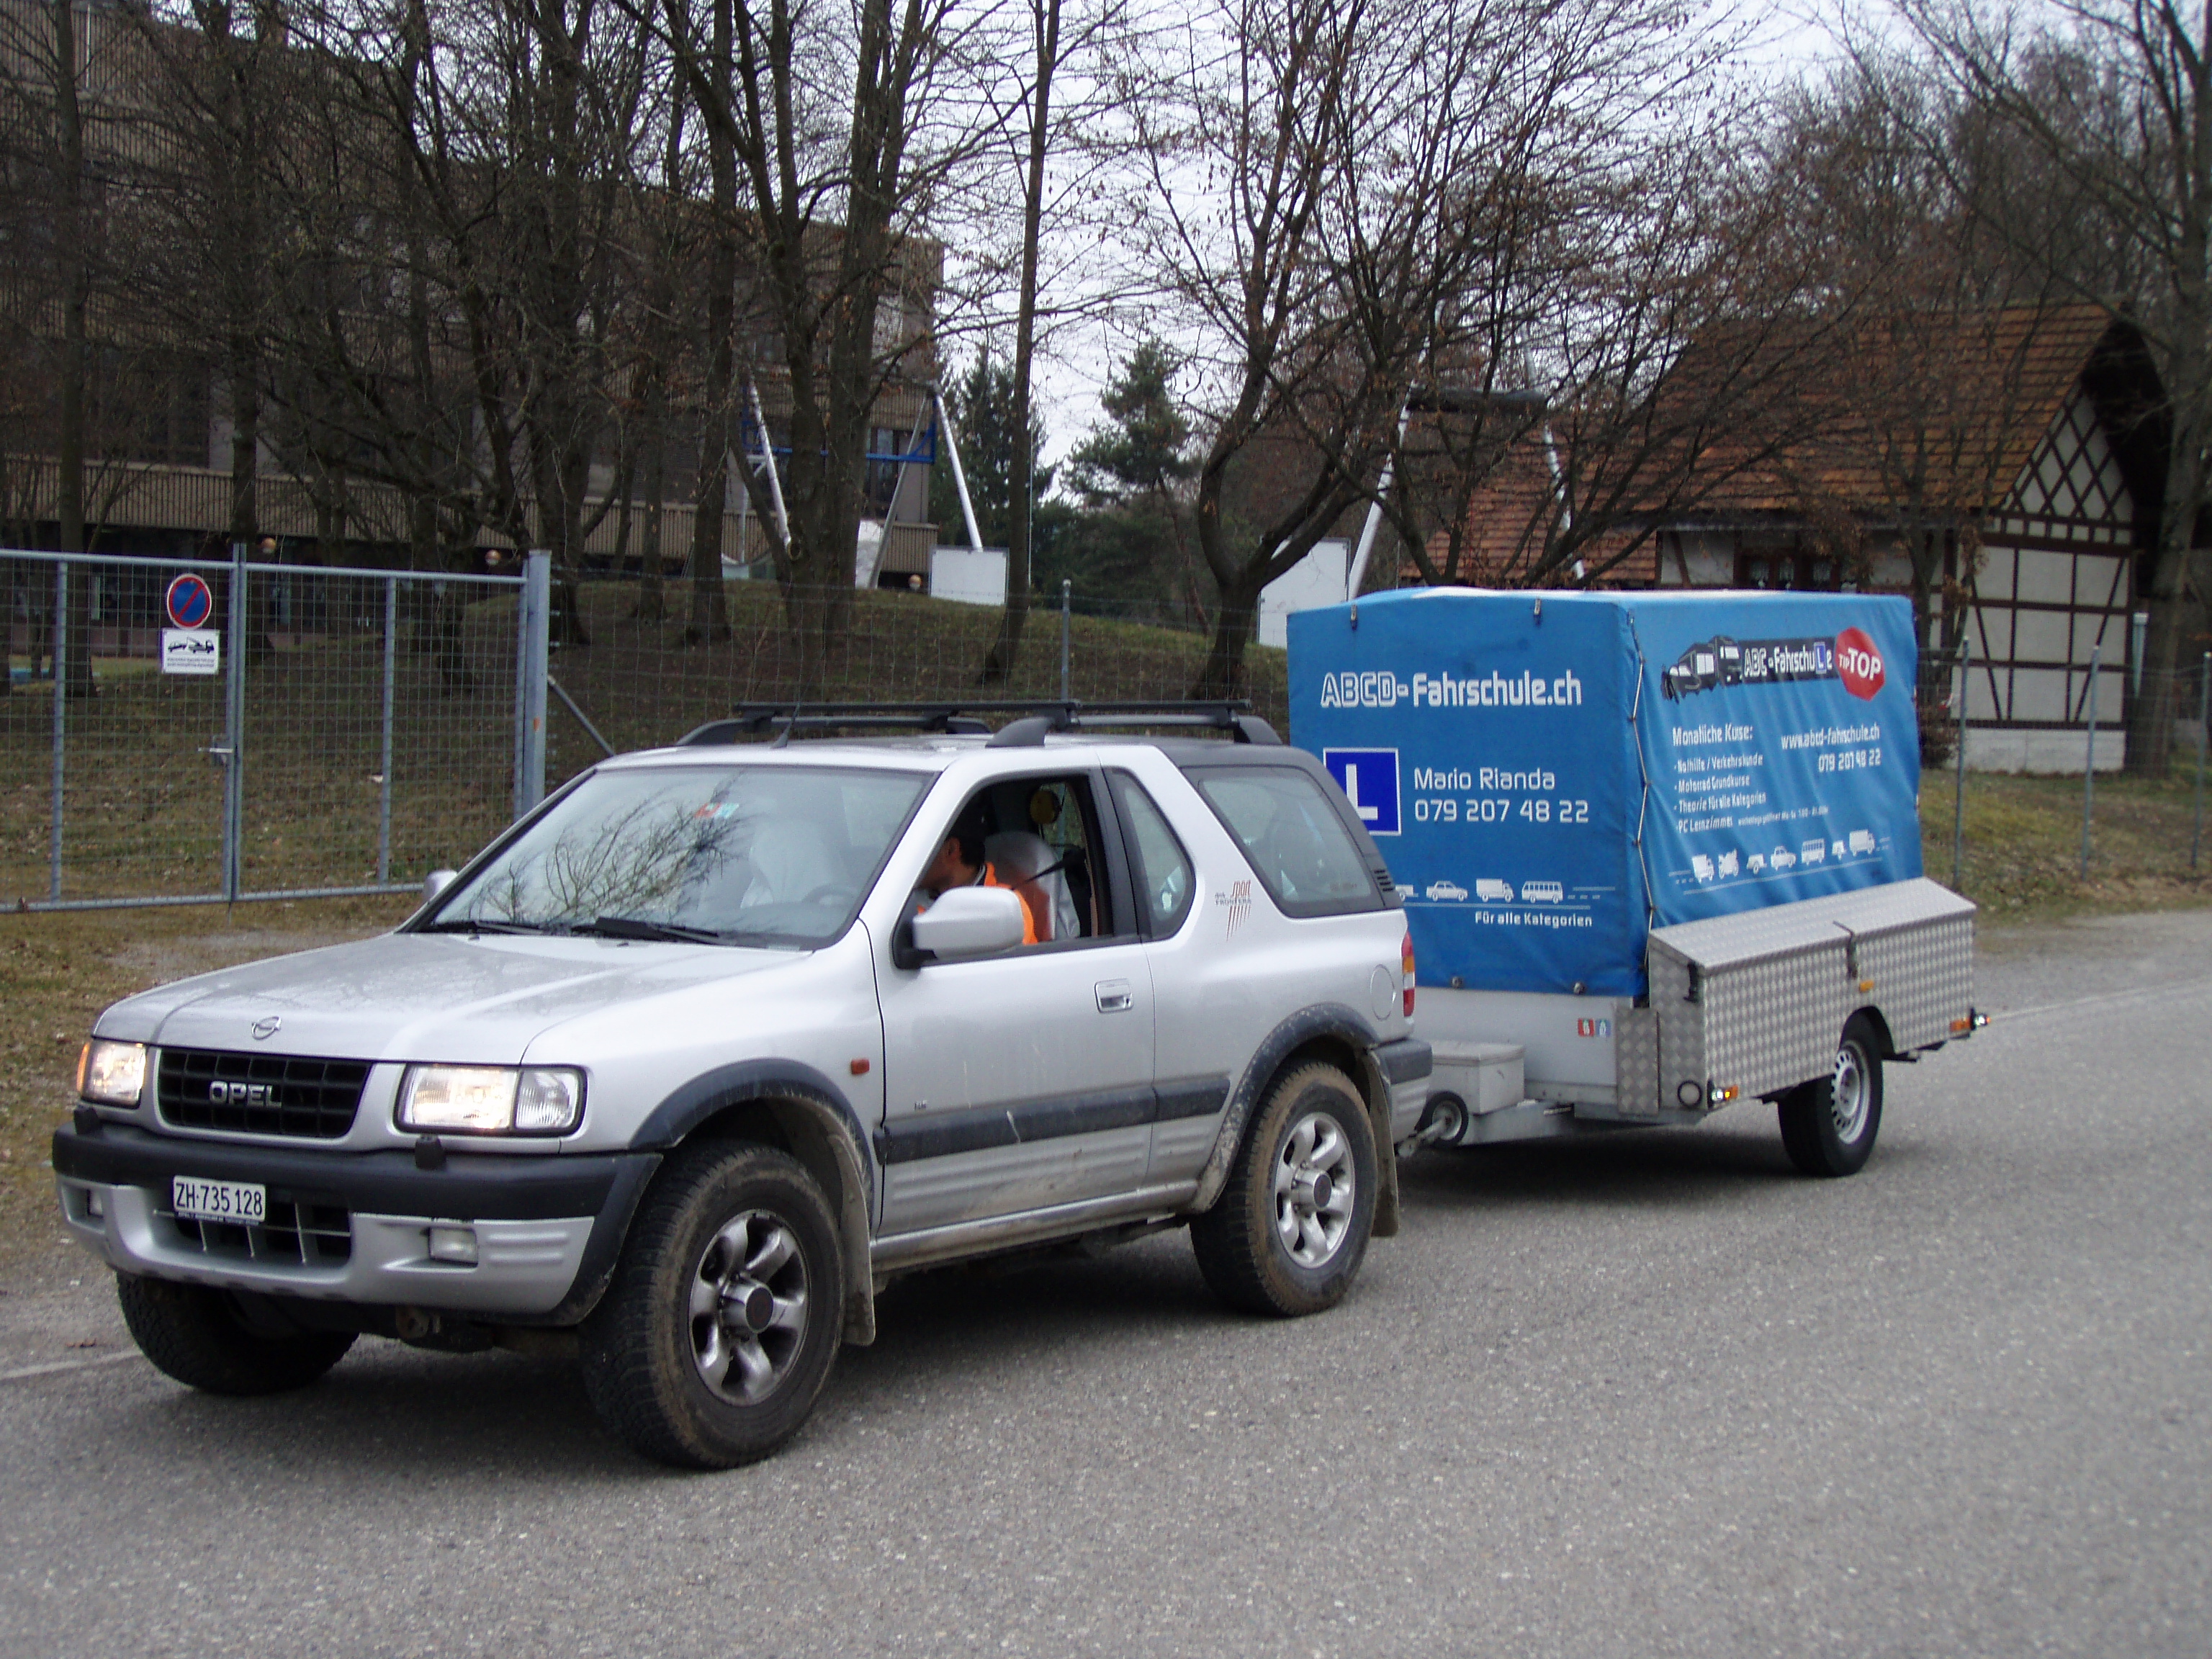 Anhängerfahrschule Kategorie BE in Winterthur mit ihrem oder unseren Fahrzeugen